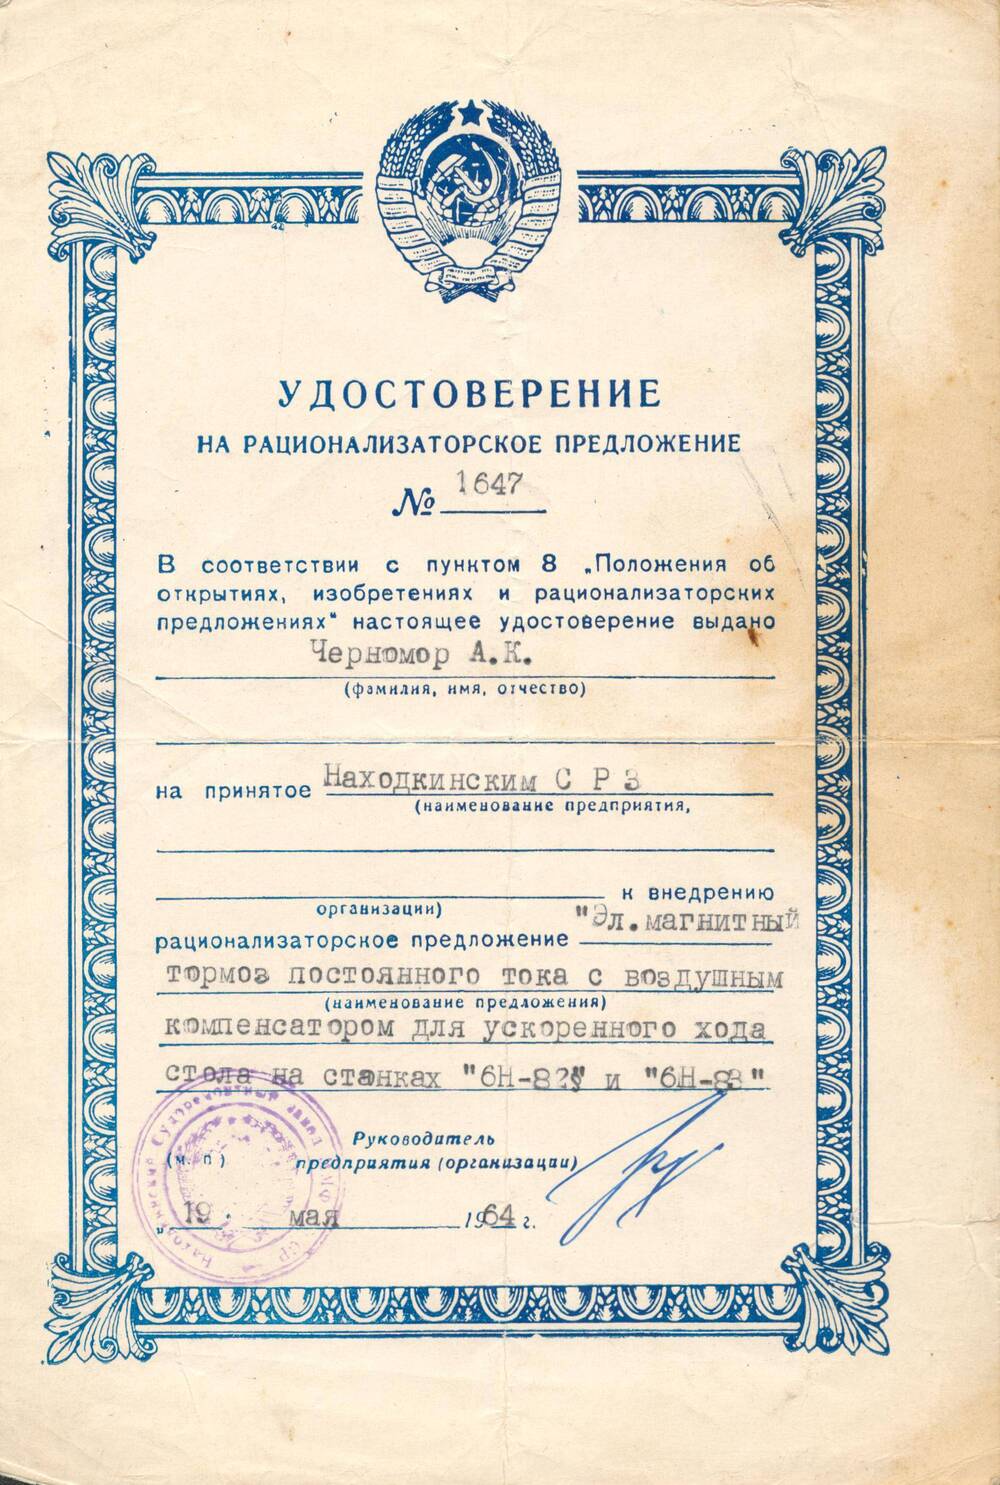 Удостоверение на рационализаторское предложение №1647 Черномора Александра Кирилловича.